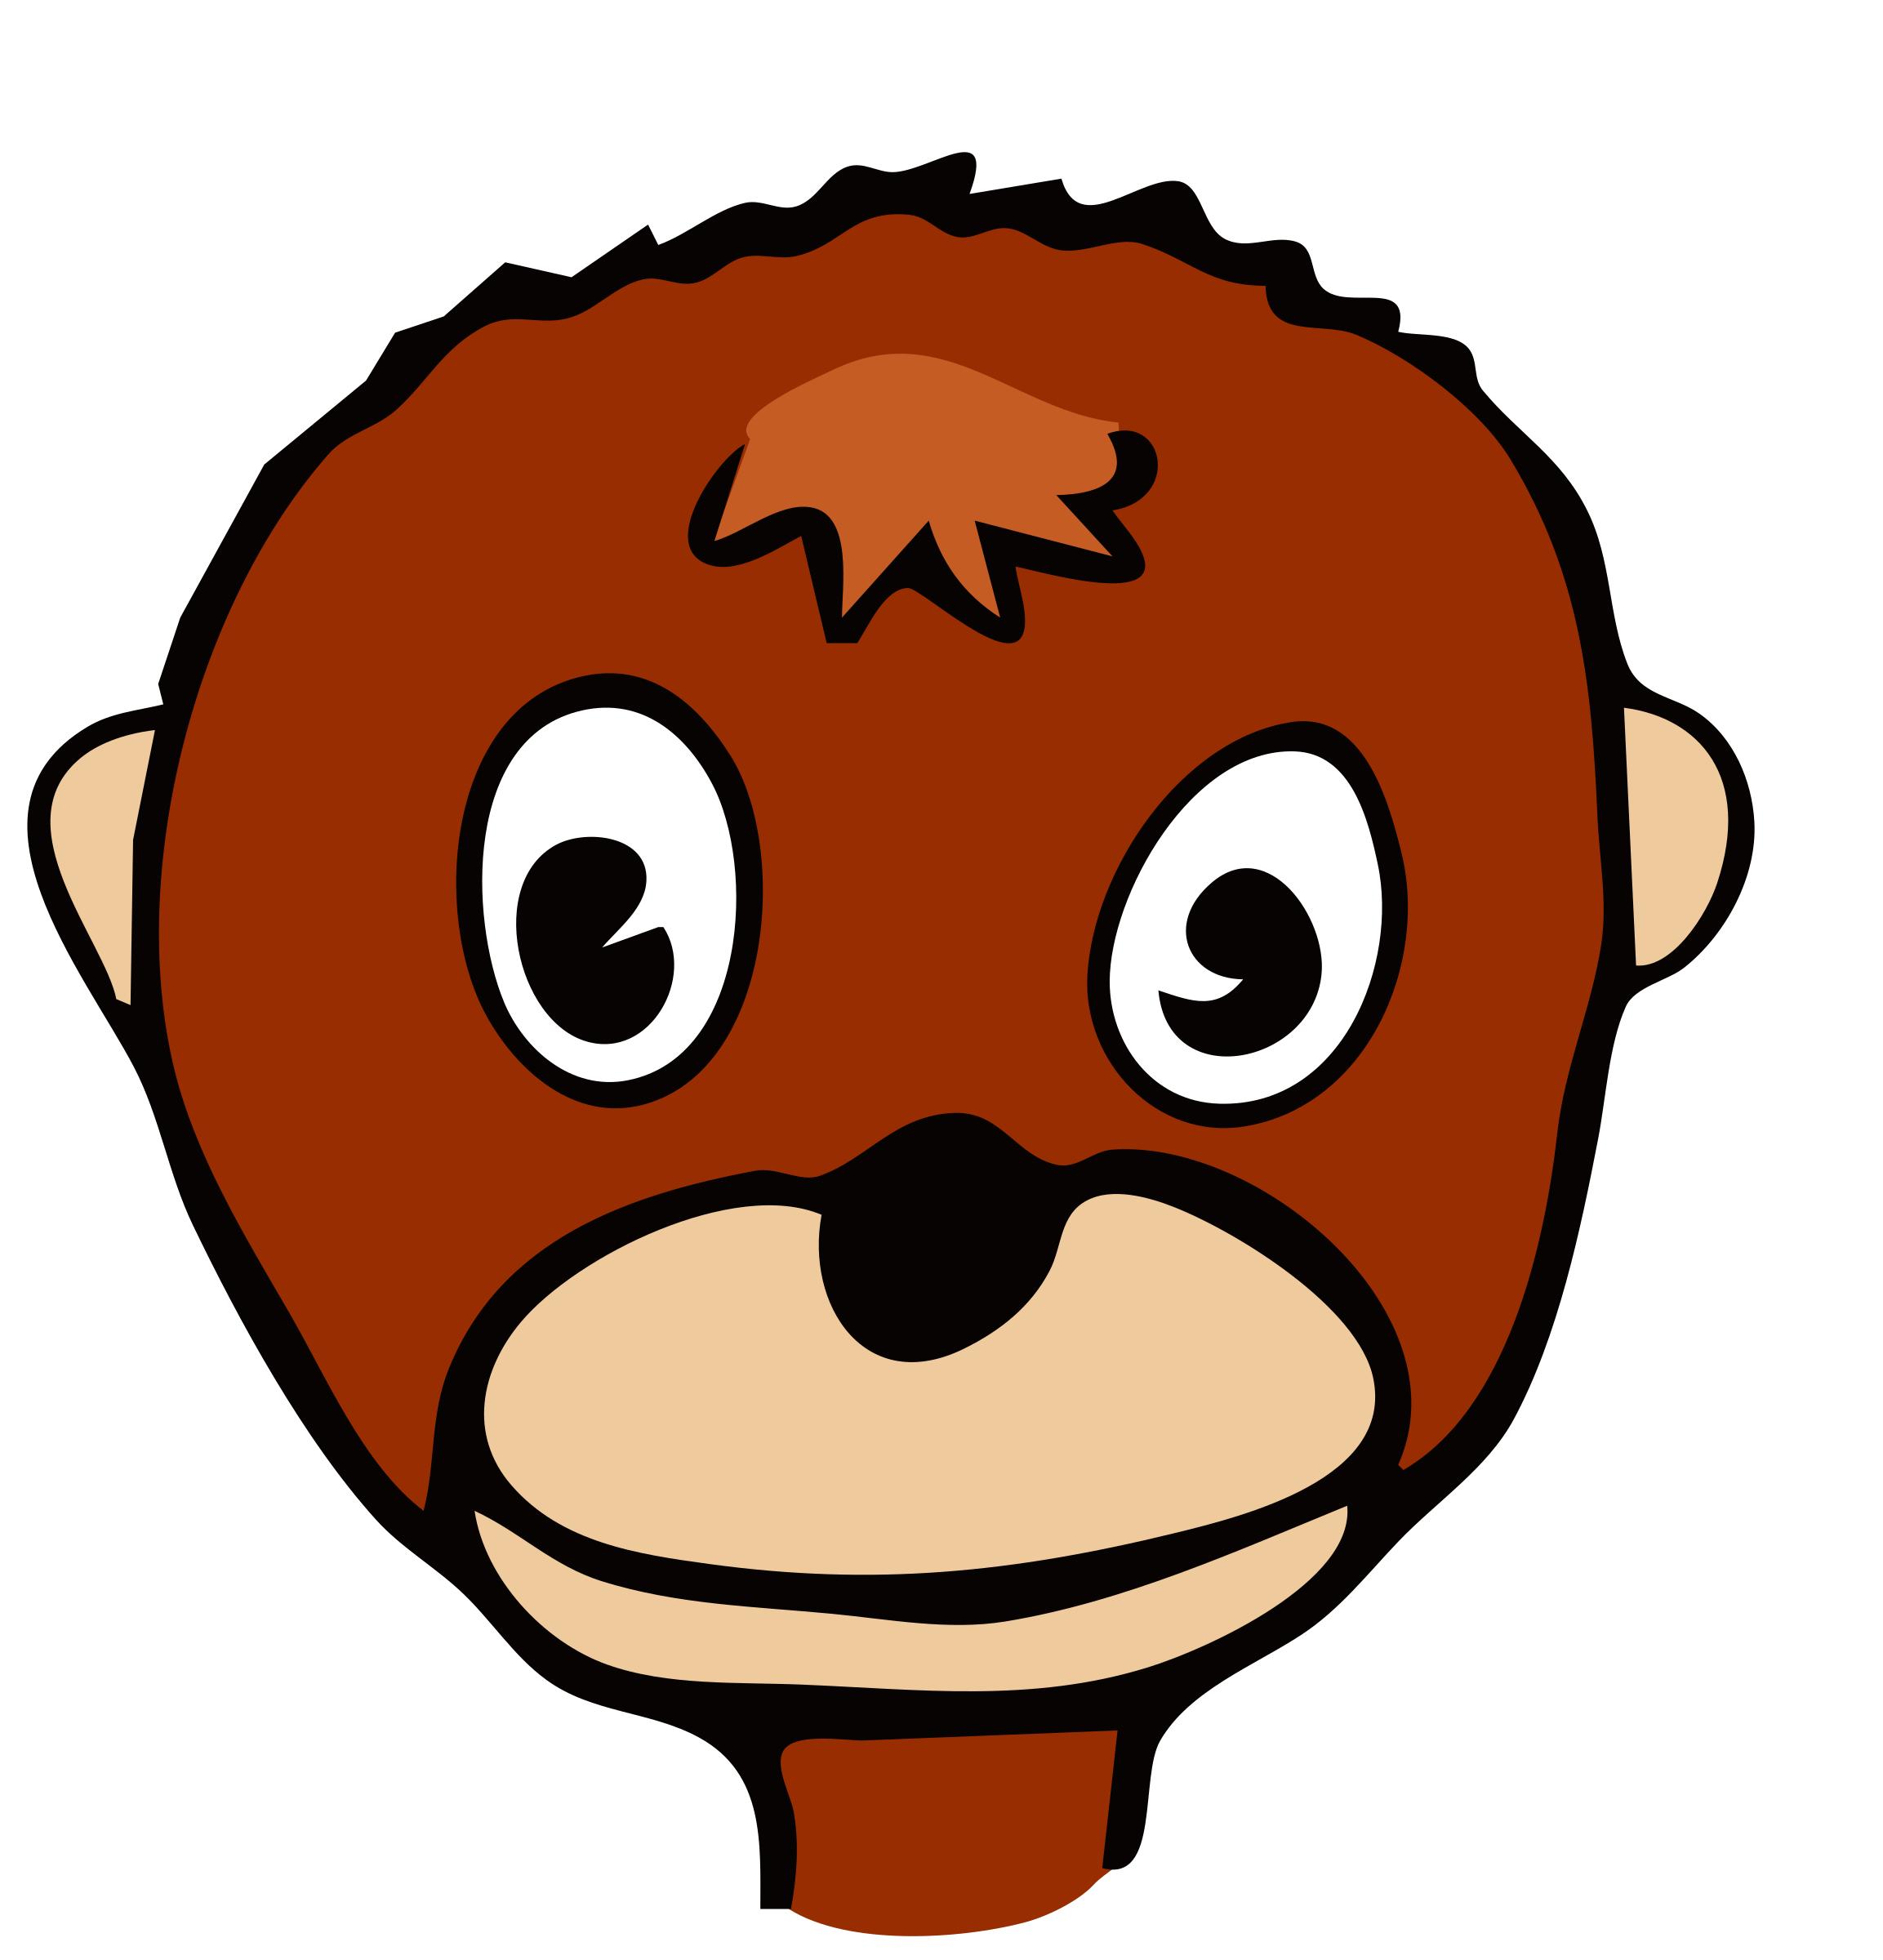 drawn monkey PNG icons